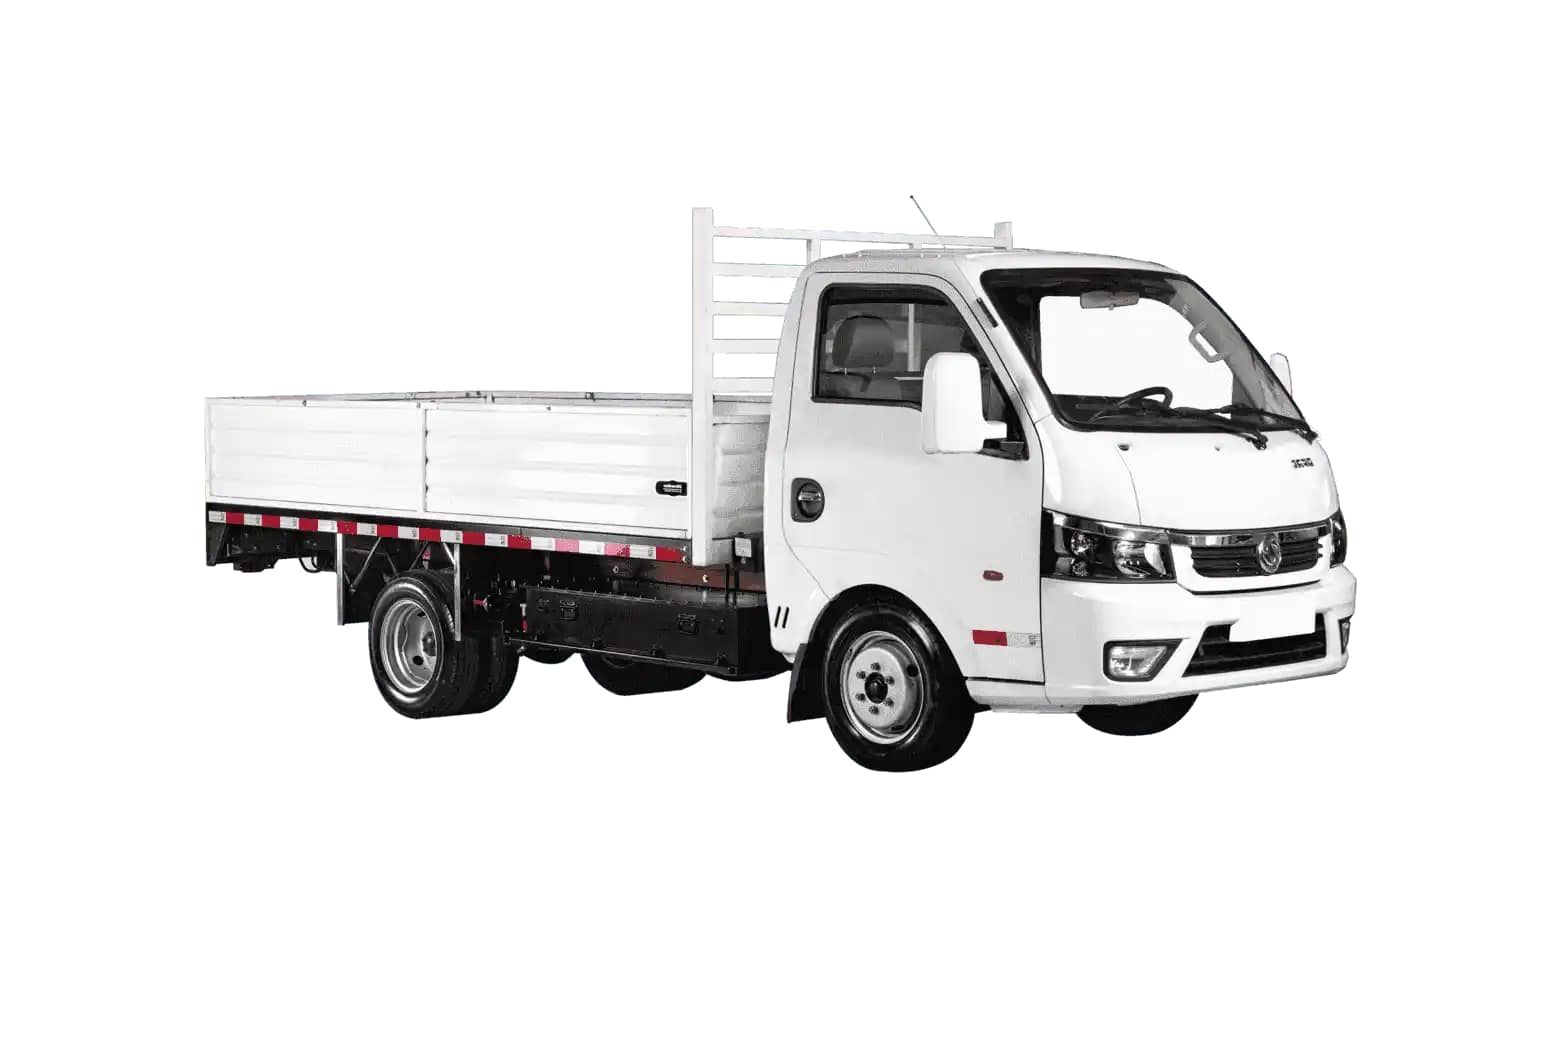 Camión eléctrico E-Cargo 2.3T